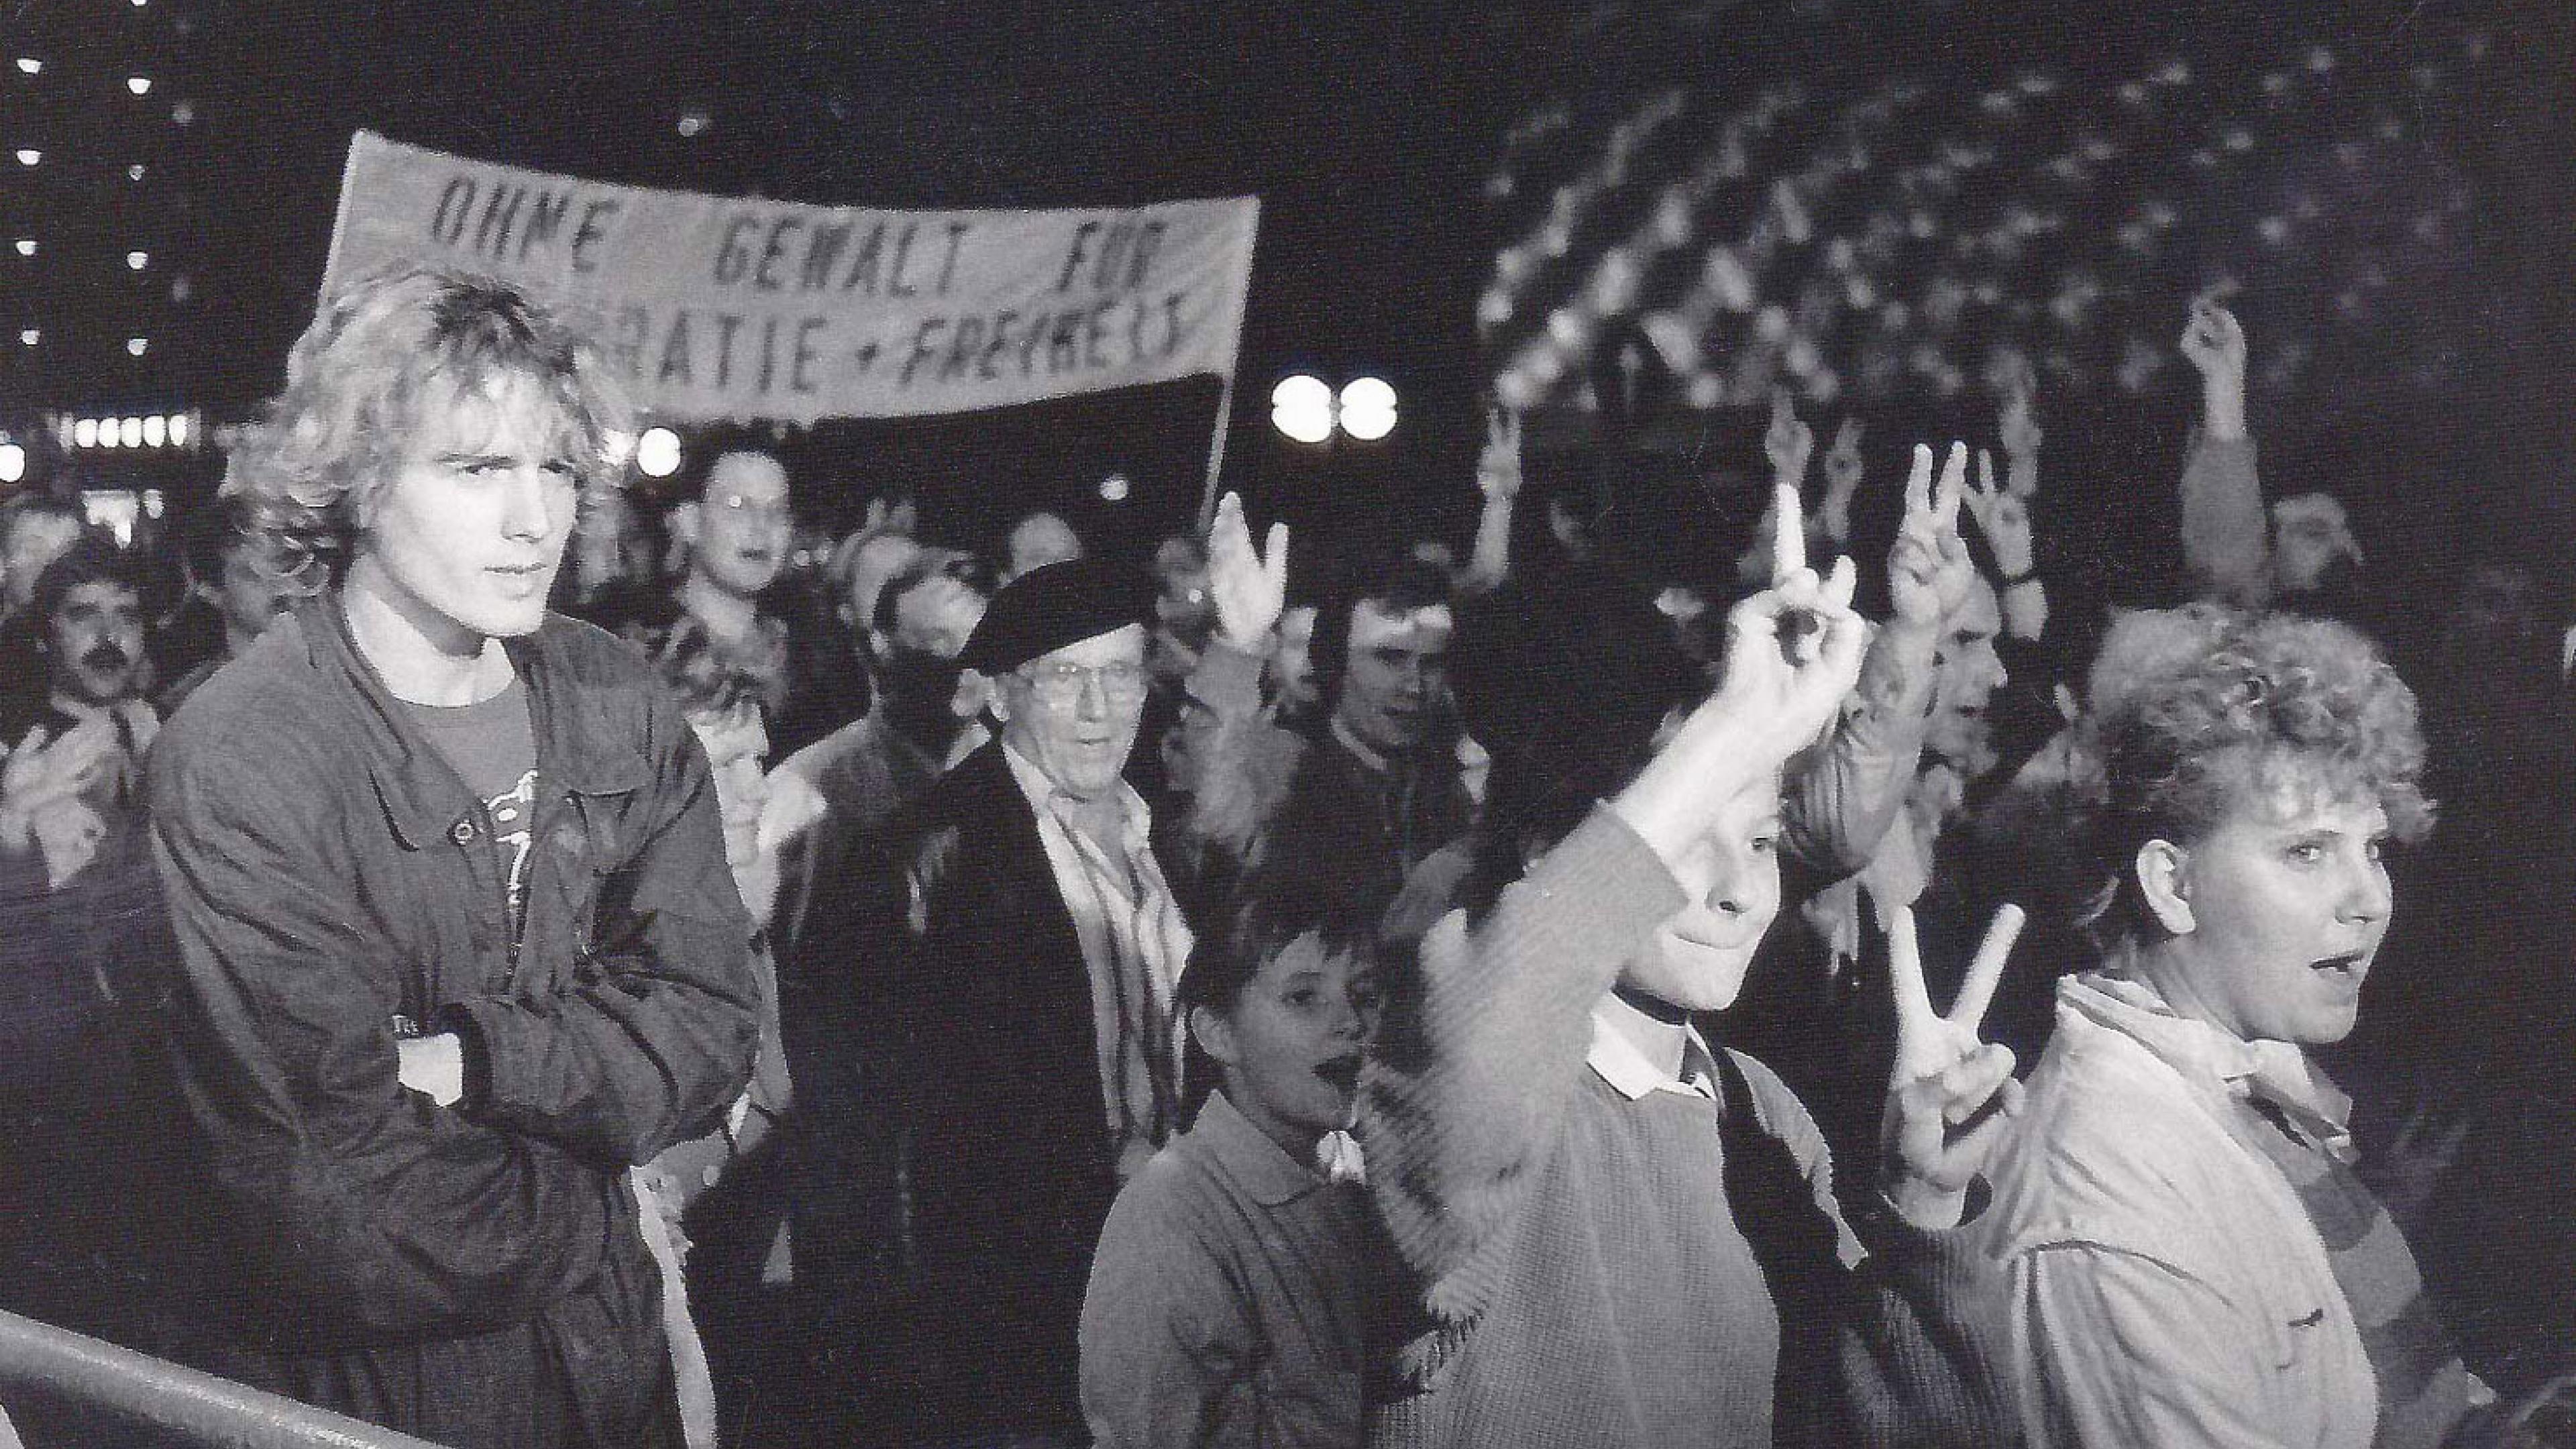 Archivbild: Demonstrierende in einem Demo-Zug